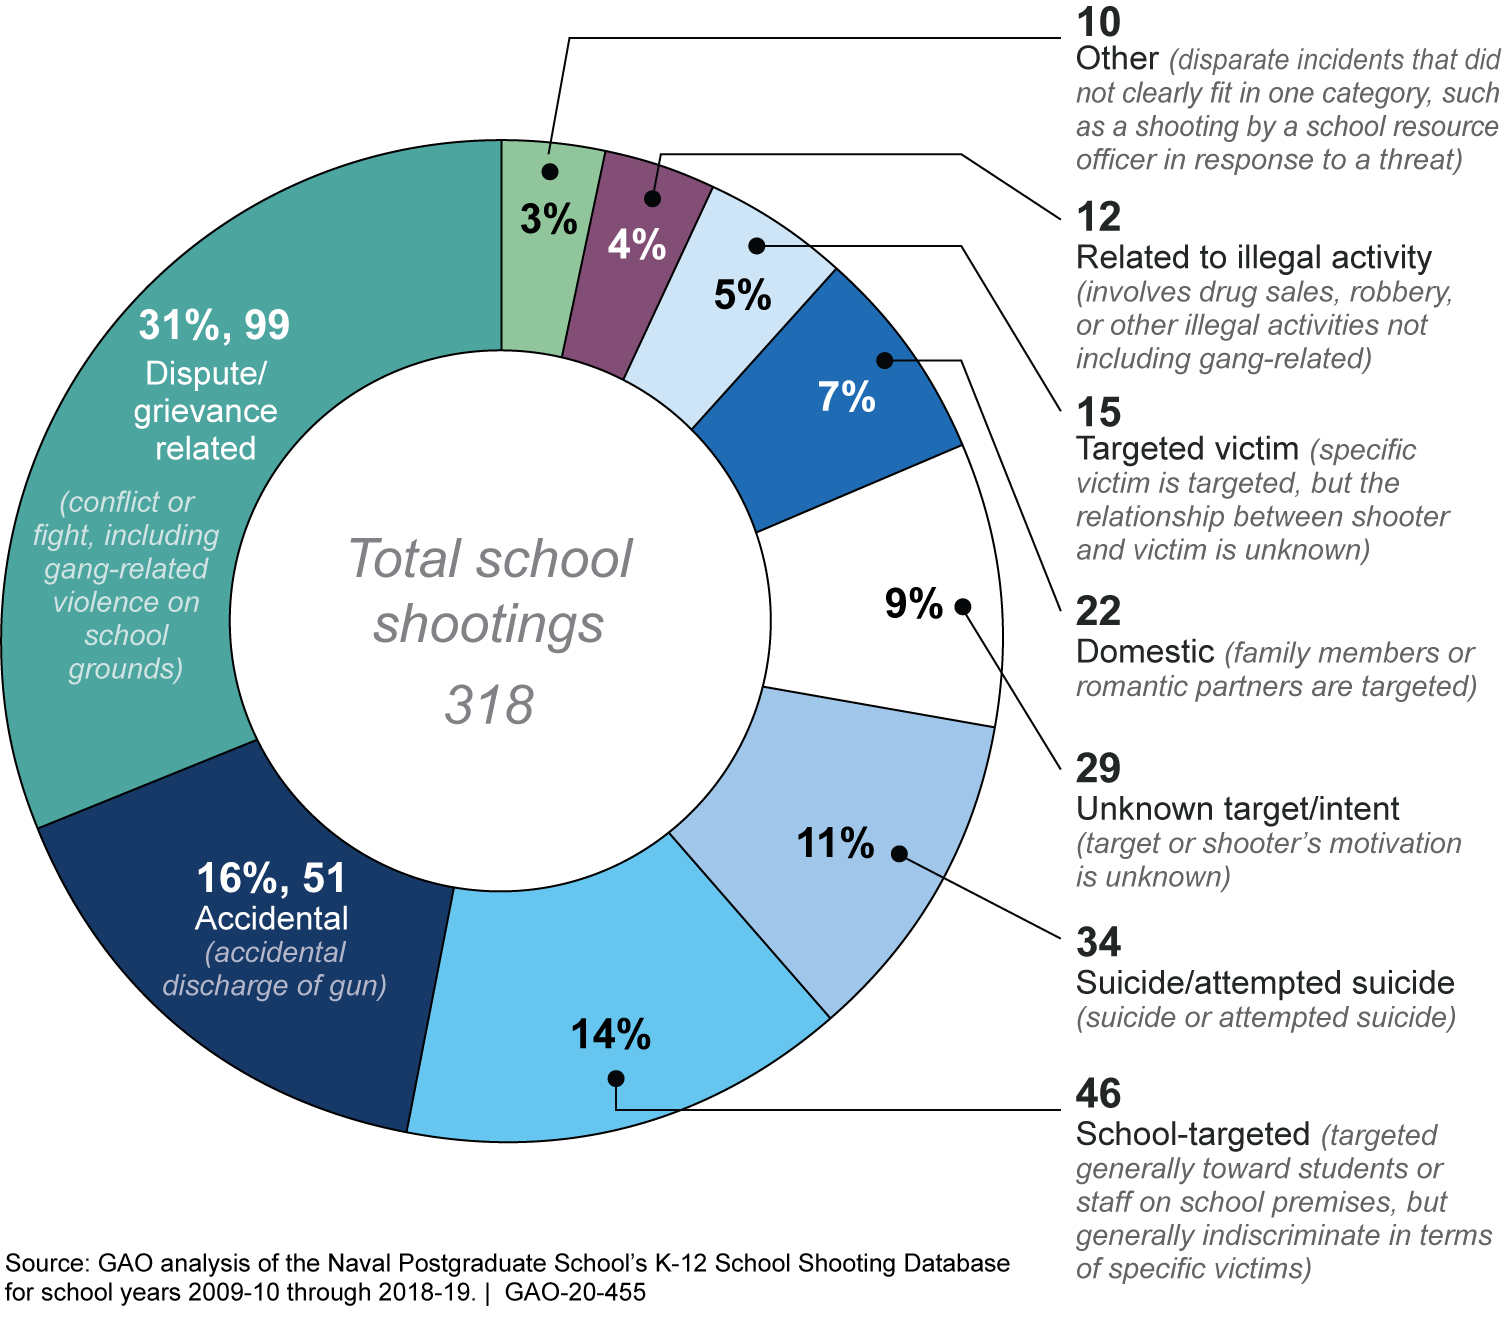 K-12 School Shootings by Kind, School Years 2009-10 through 2018-19